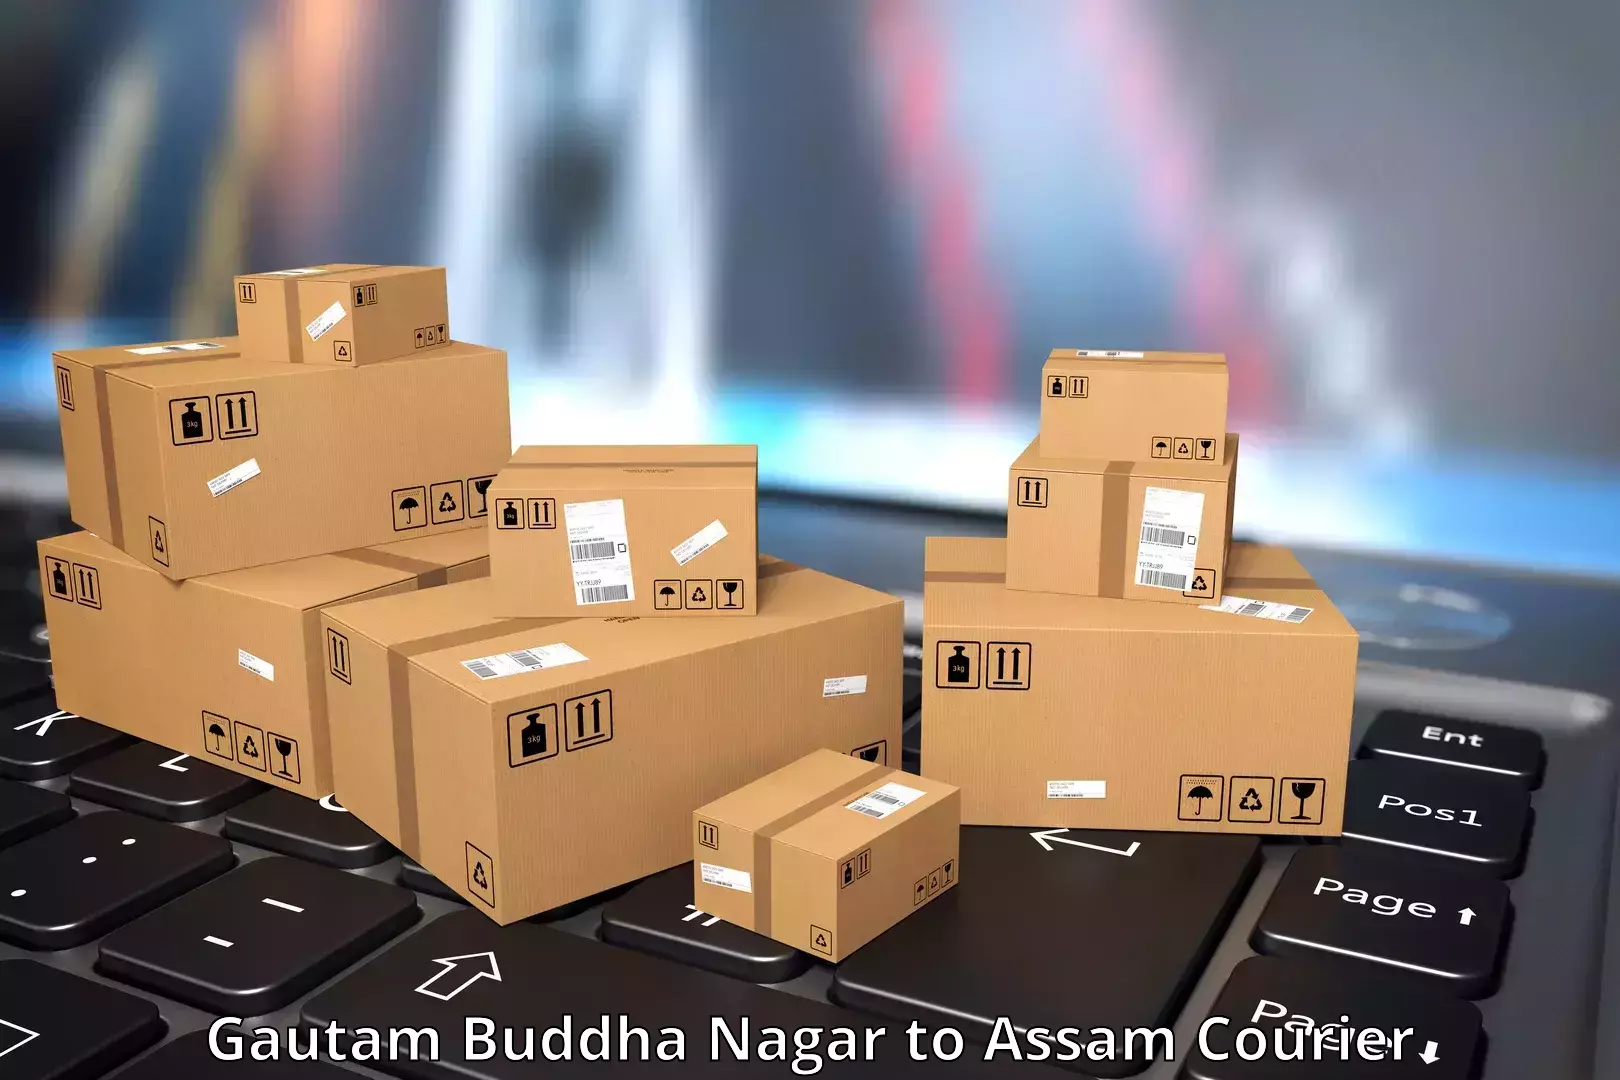 Courier service innovation Gautam Buddha Nagar to Mazbat